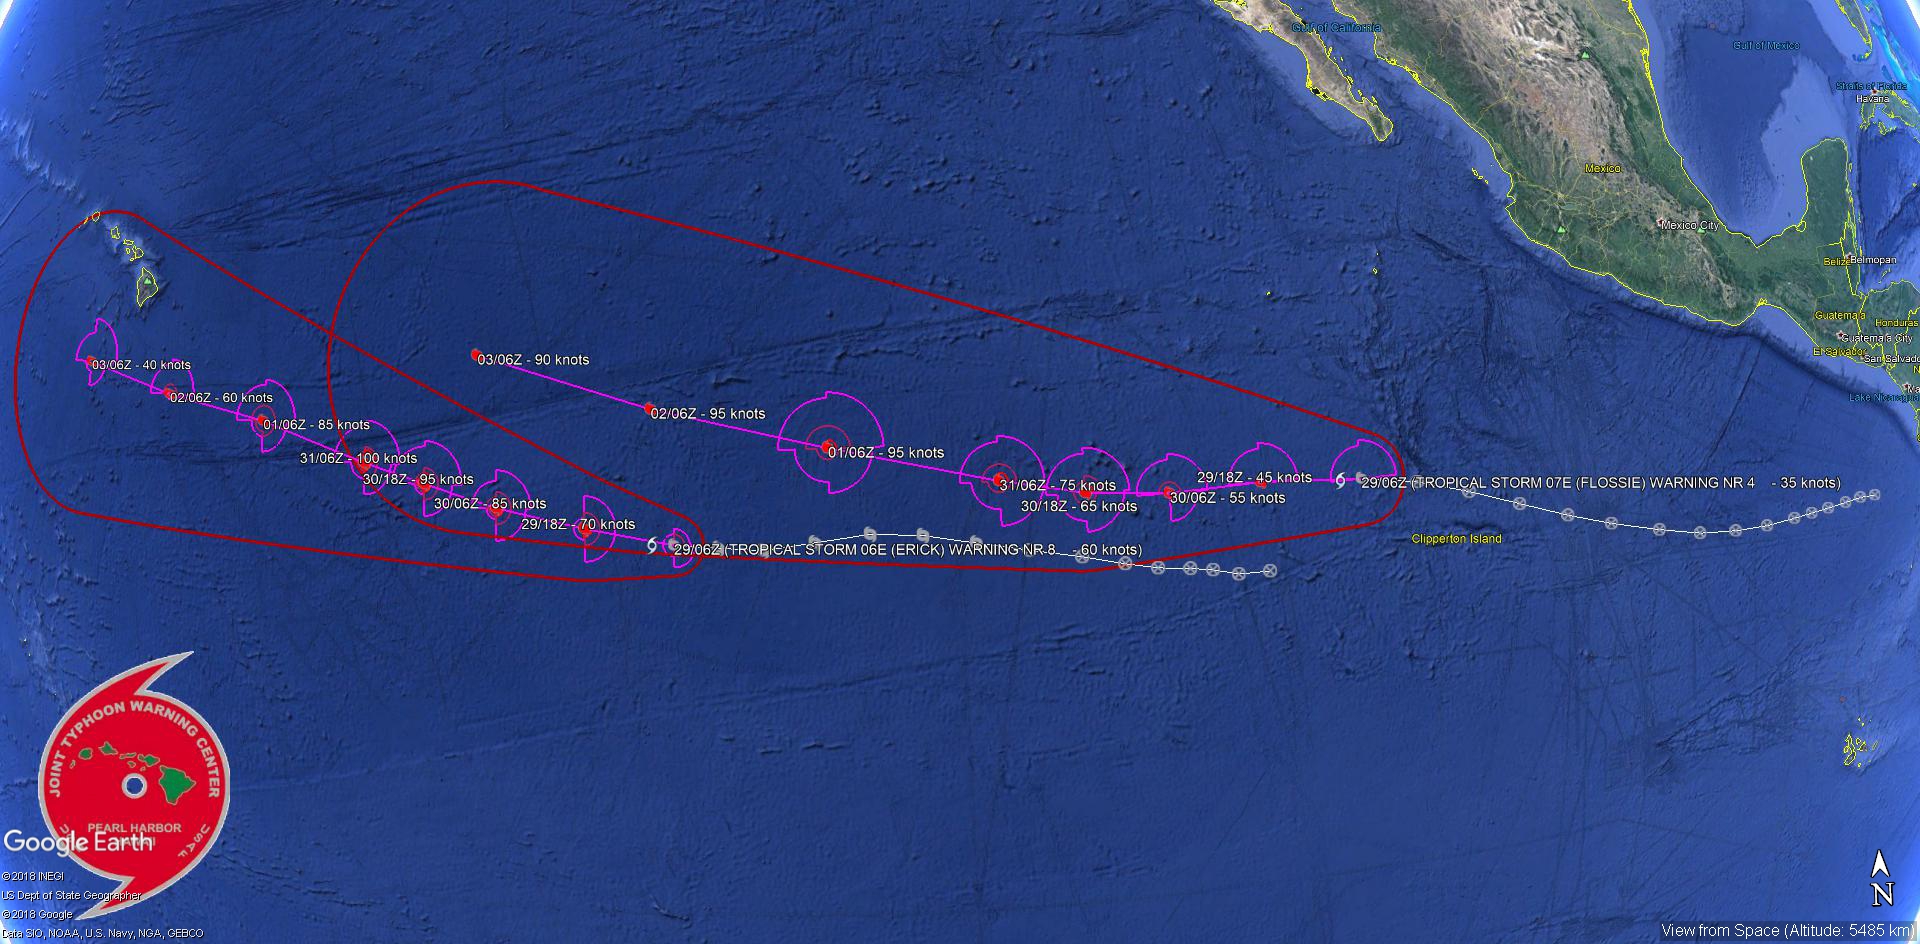 Epousant des trajectoires similaires selon les prévisions établies les deux systèmes se rapprocheront un peu l'un de l'autre d'ici 5 jours. Joint Typhoon Warning Center.